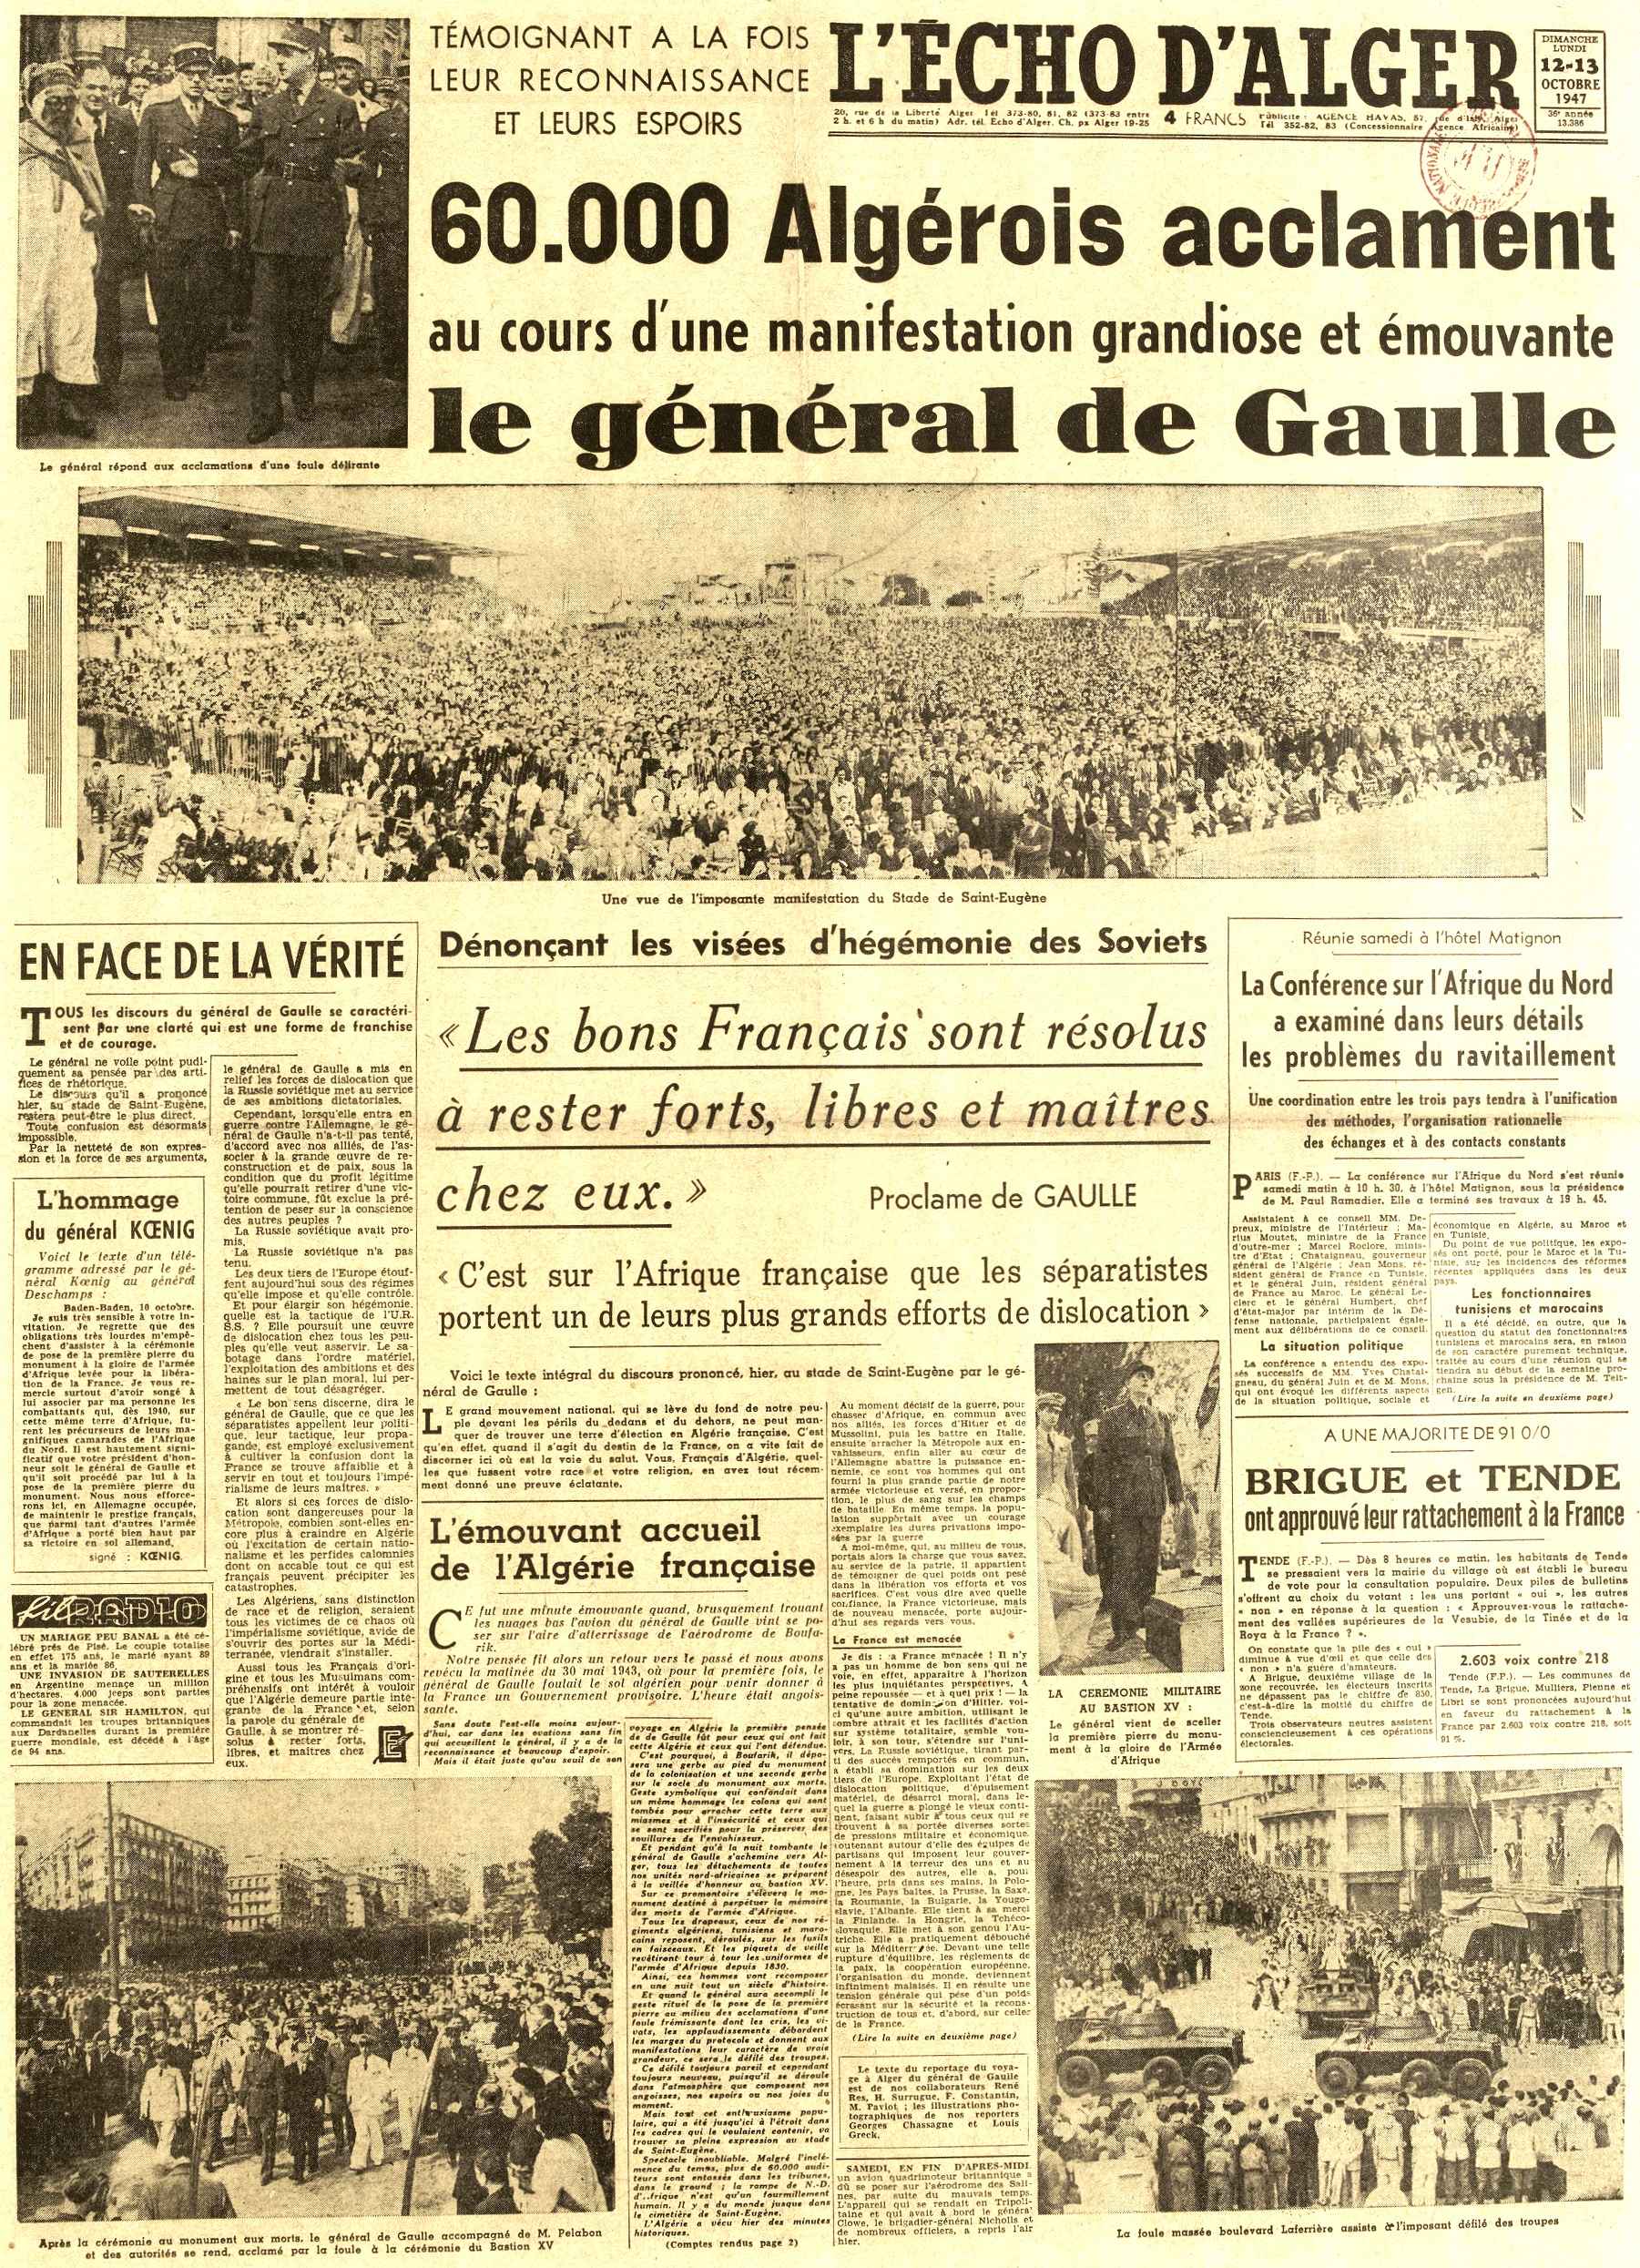 De Gaulle : Discours du 12 octobre 1947